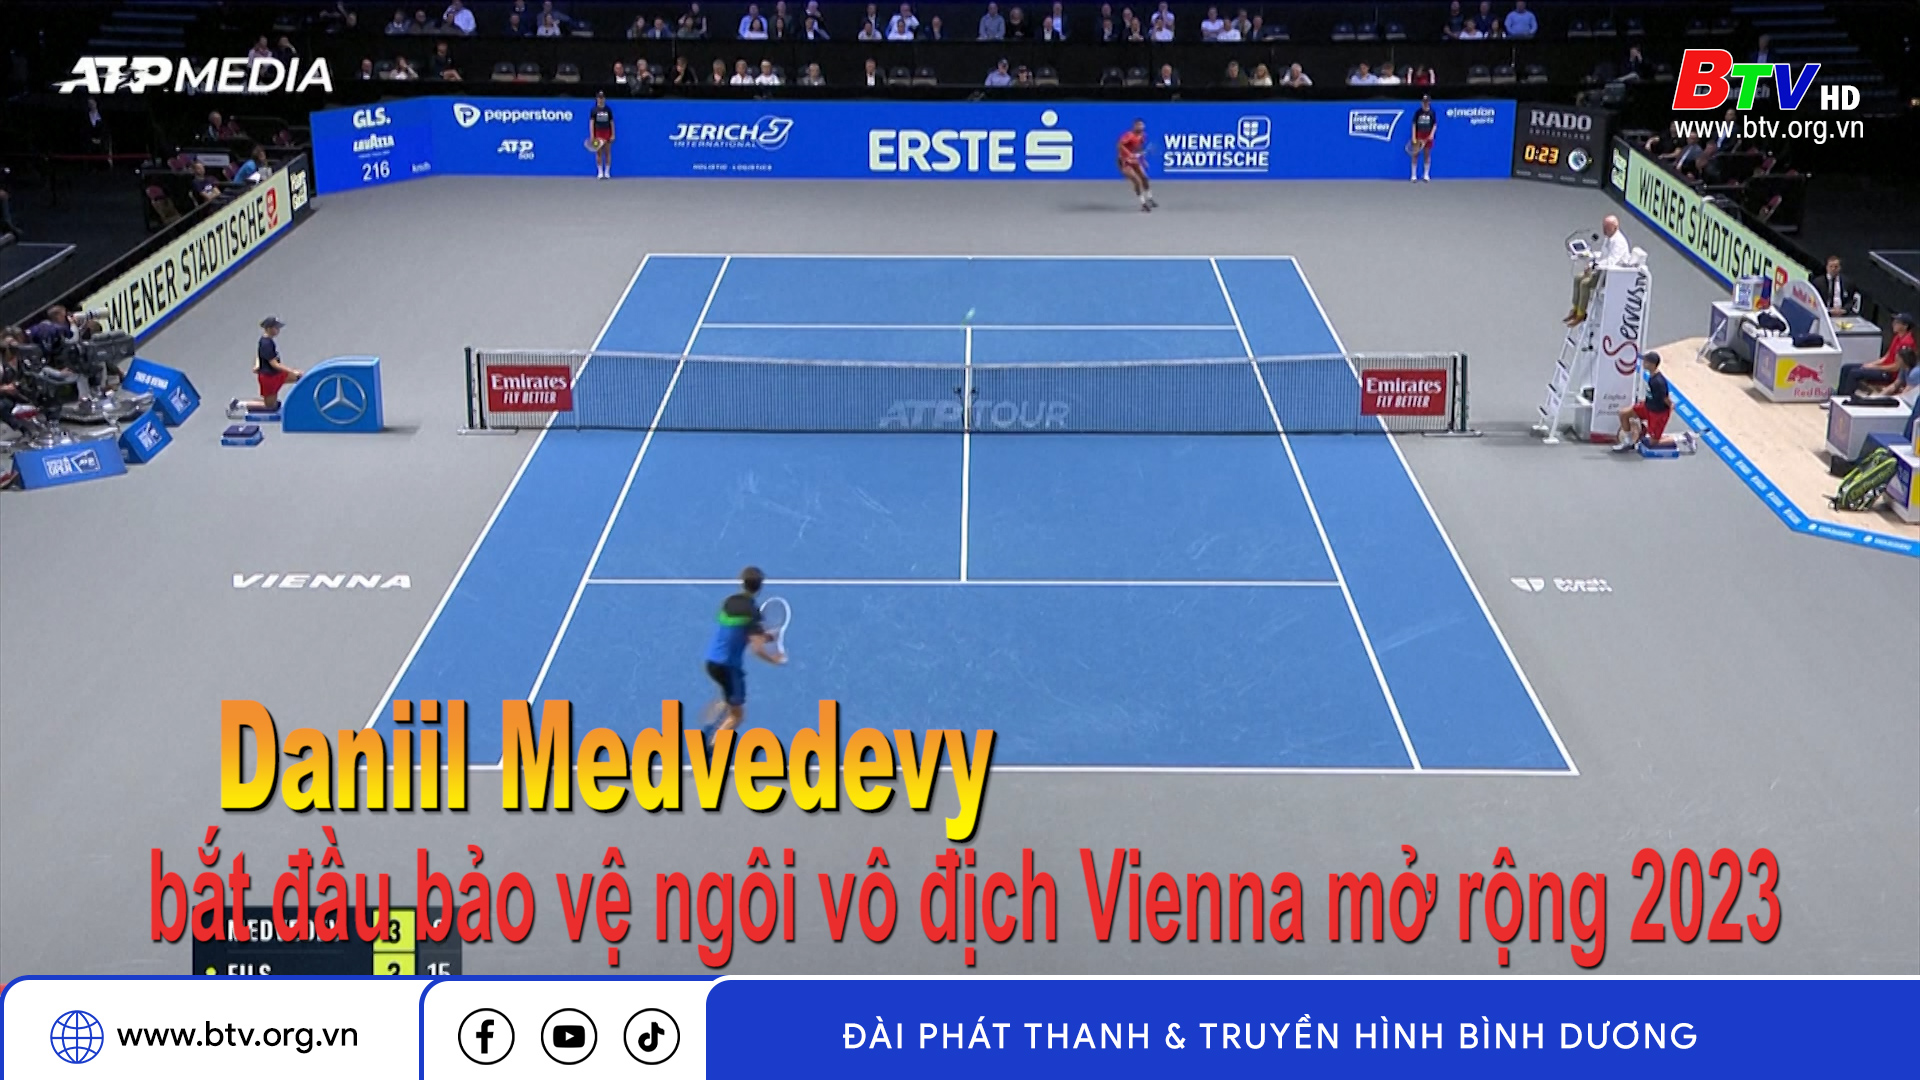 Daniil Medvedev bắt đầu bảo vệ ngôi vô địch Vienna mở rộng 2023